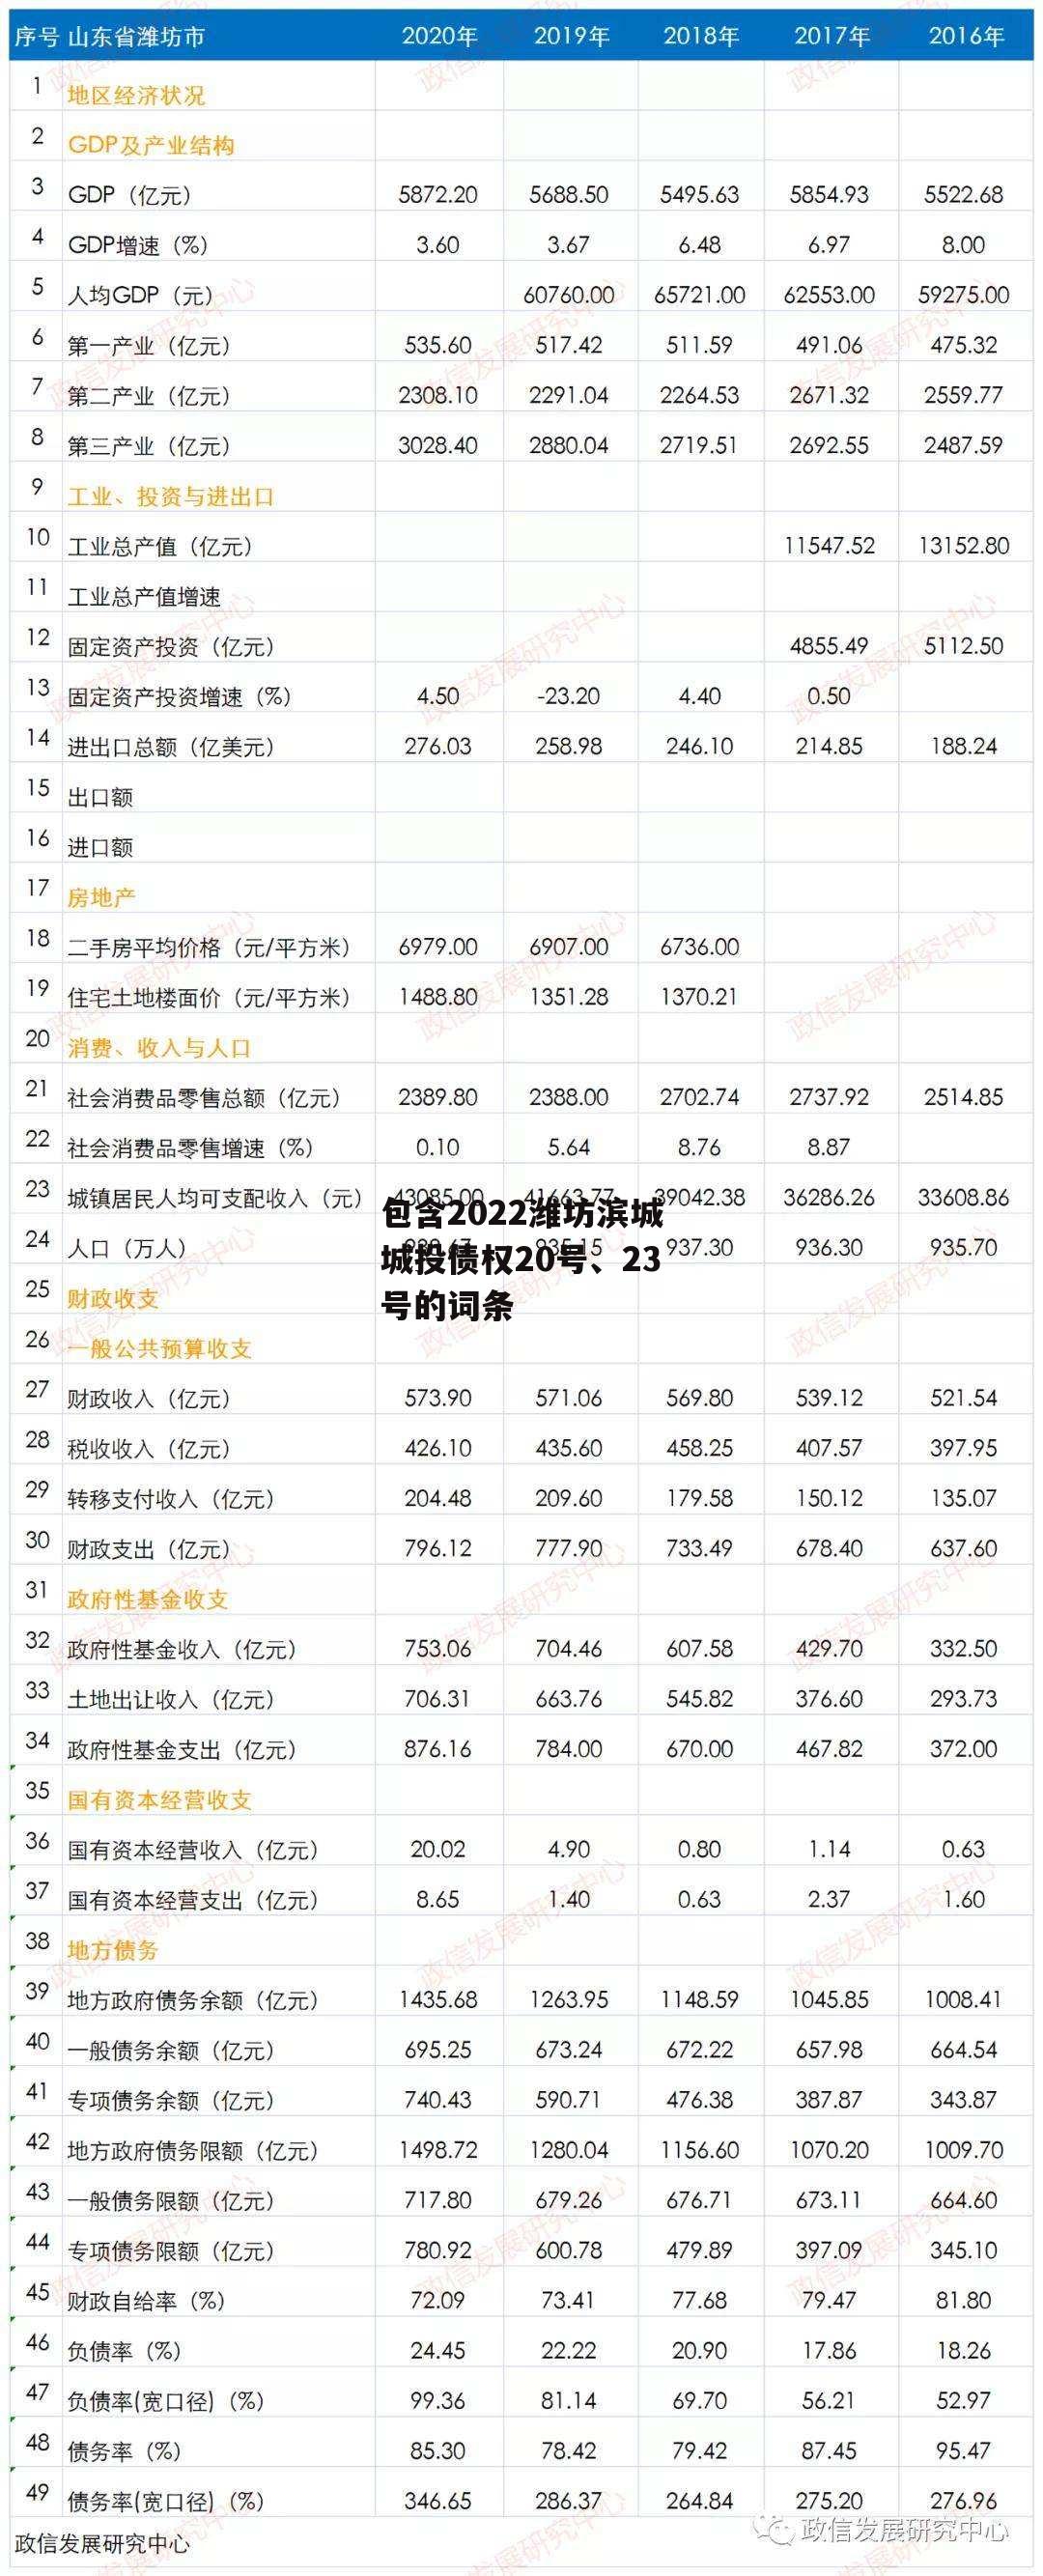 包含2022潍坊滨城城投债权20号、23号的词条